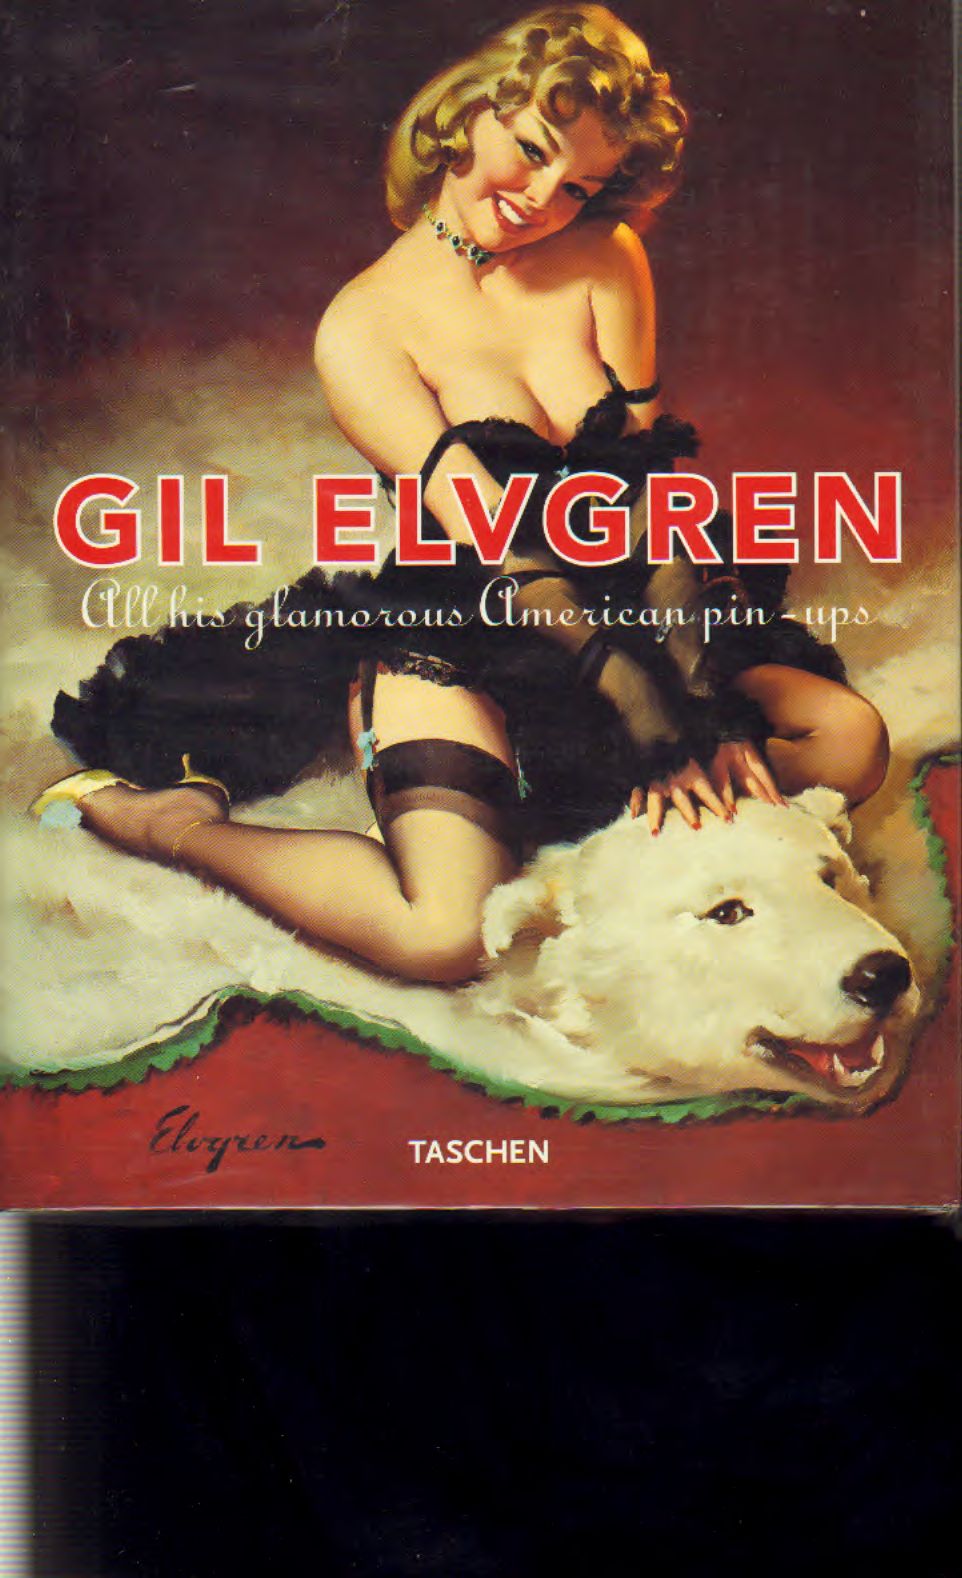 Elvgren - Gil Elvgren  All his glamorous America pin-up